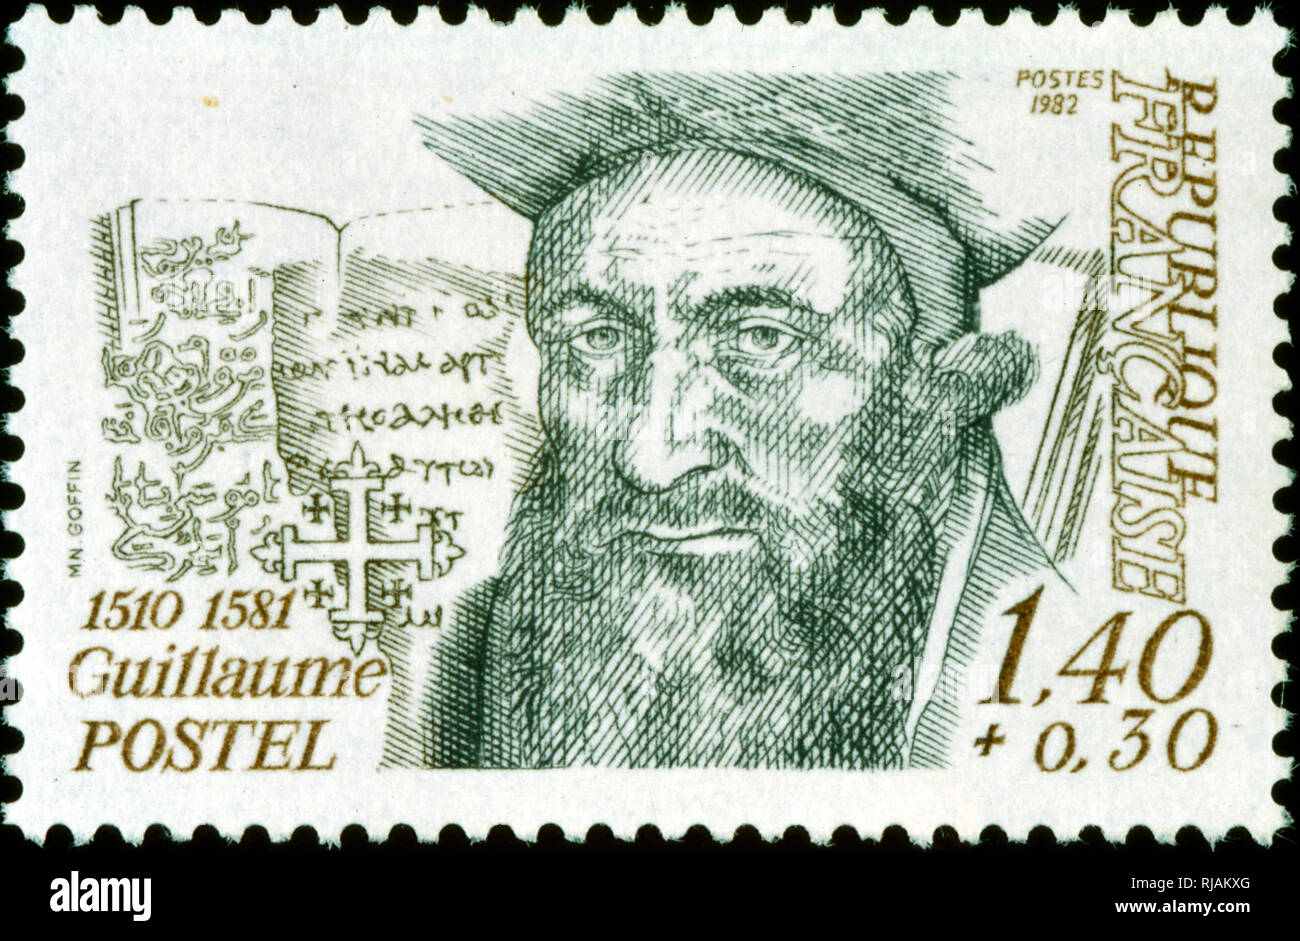 Französische Briefmarke zum Gedenken an Guillaume Postel (1510-1581), französischer Linguist, Astronom, Kabbalistischen, Diplomat, Professor, und religiöser Universalist Stockfoto